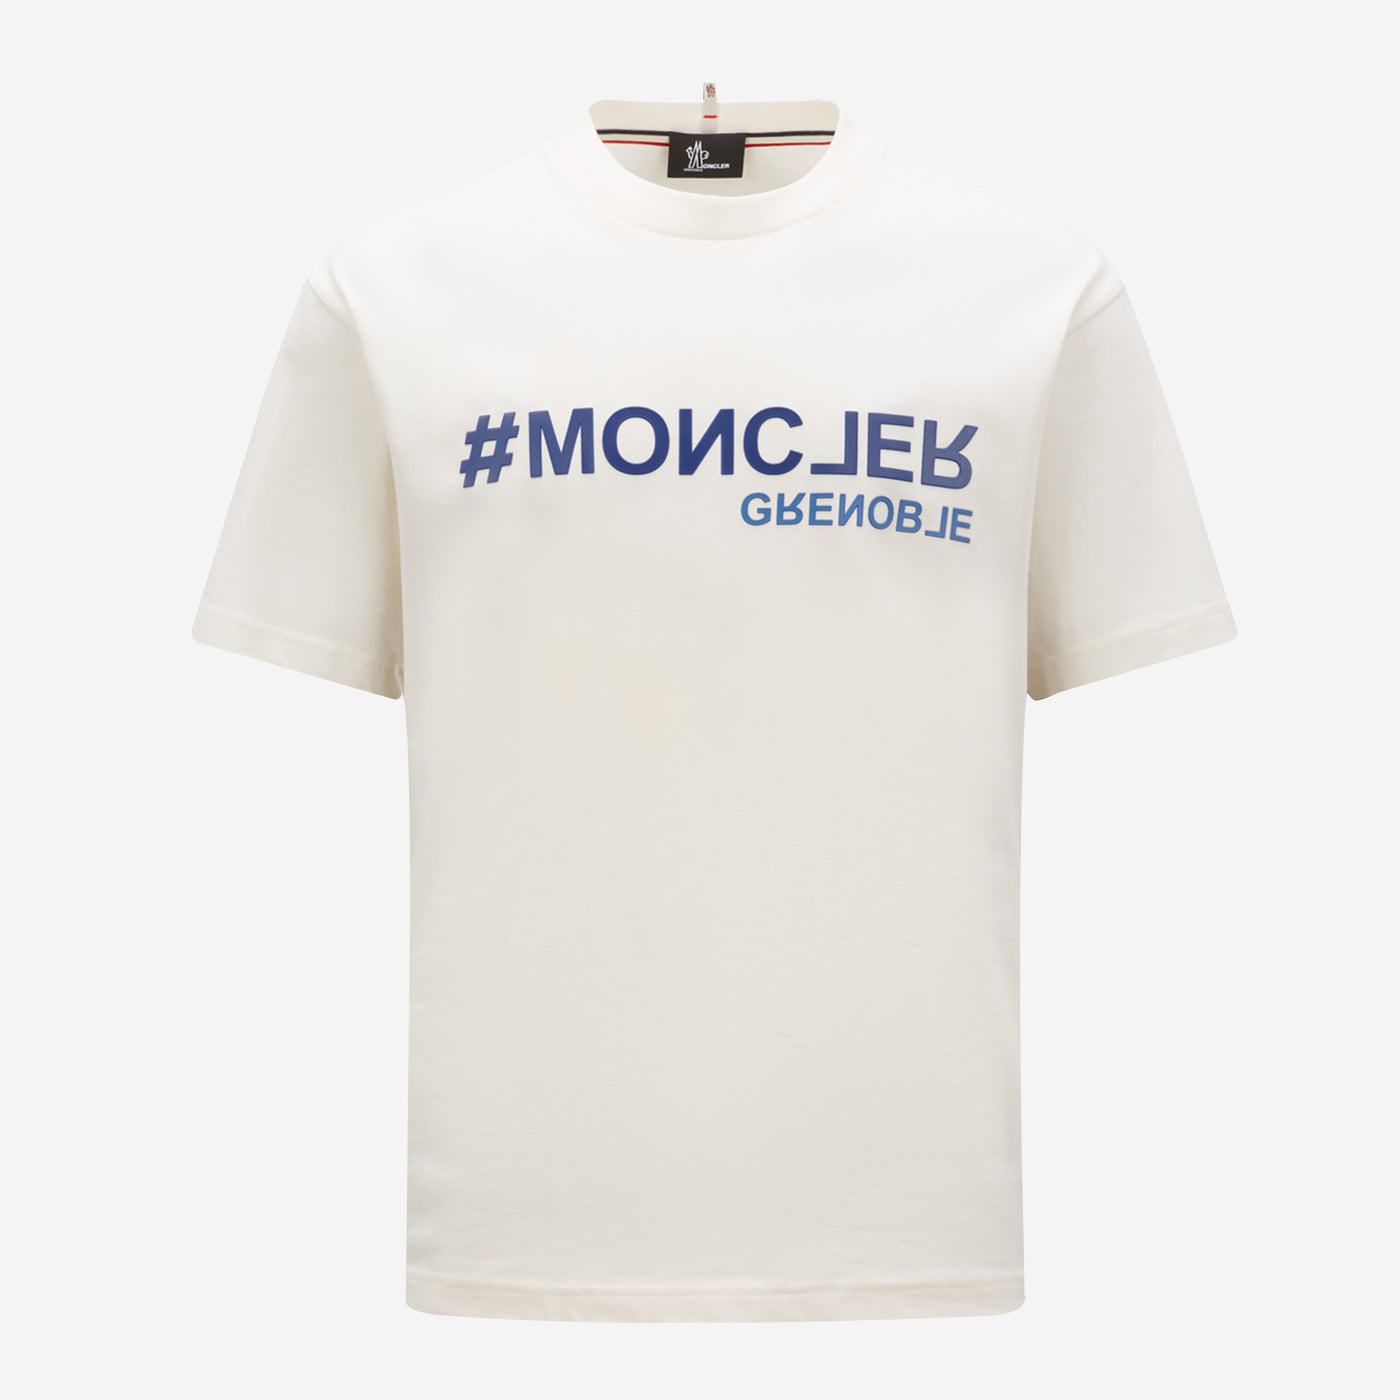 Moncler Grenoble Logo T-Shirt